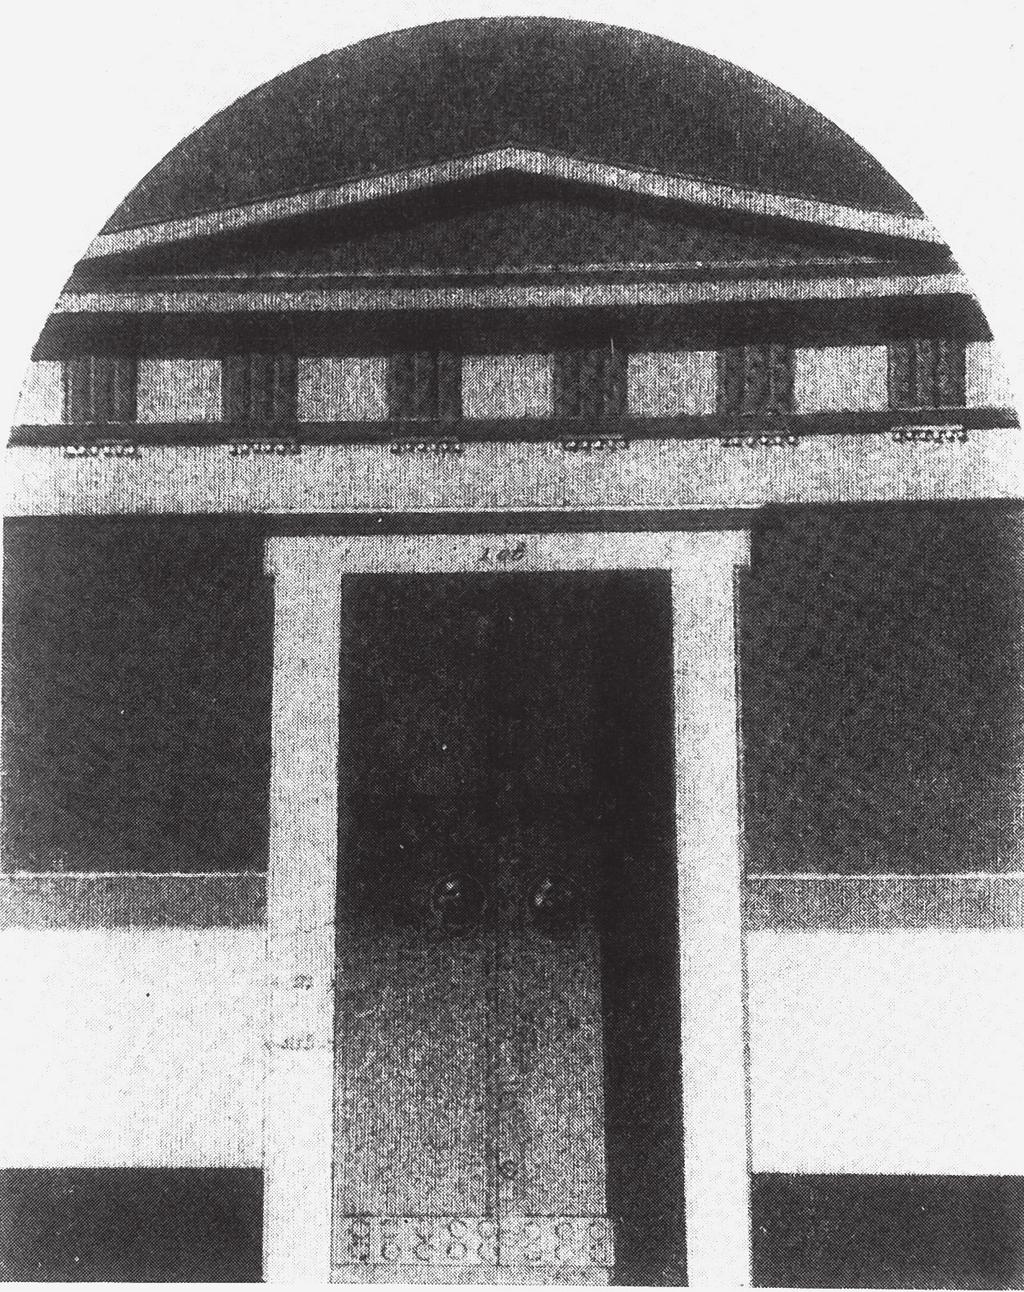 LA DECORAZIONE PARIETALE DI TIPO ARCHITETTONICO 67 Fig. 7. Pidna, ingresso della tomba a camera (Lehmann 1969, fig. 162).